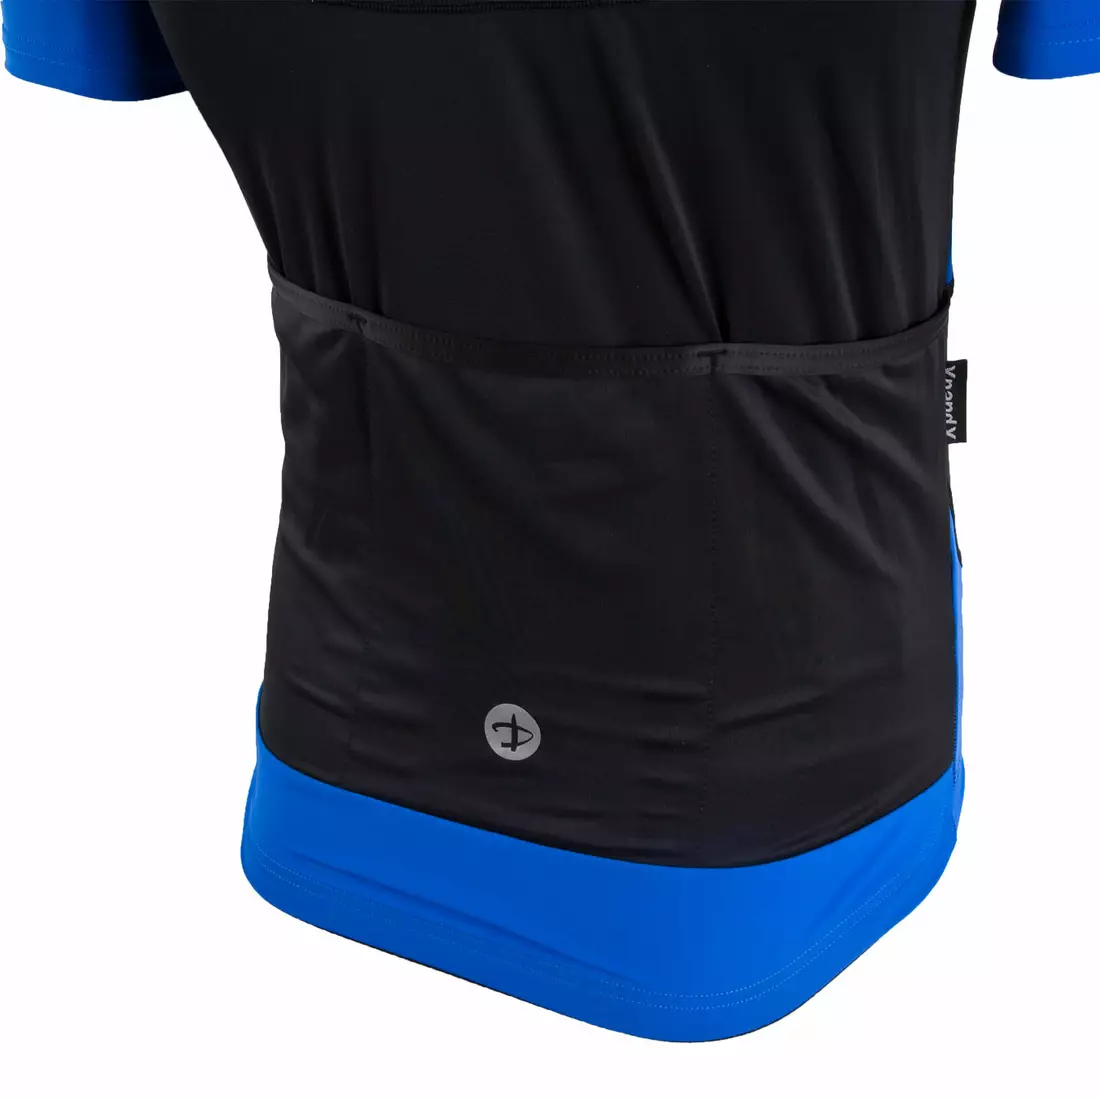 DEKO BURAQ pánský cyklistický dres, krátký rukáv, černý / modrý